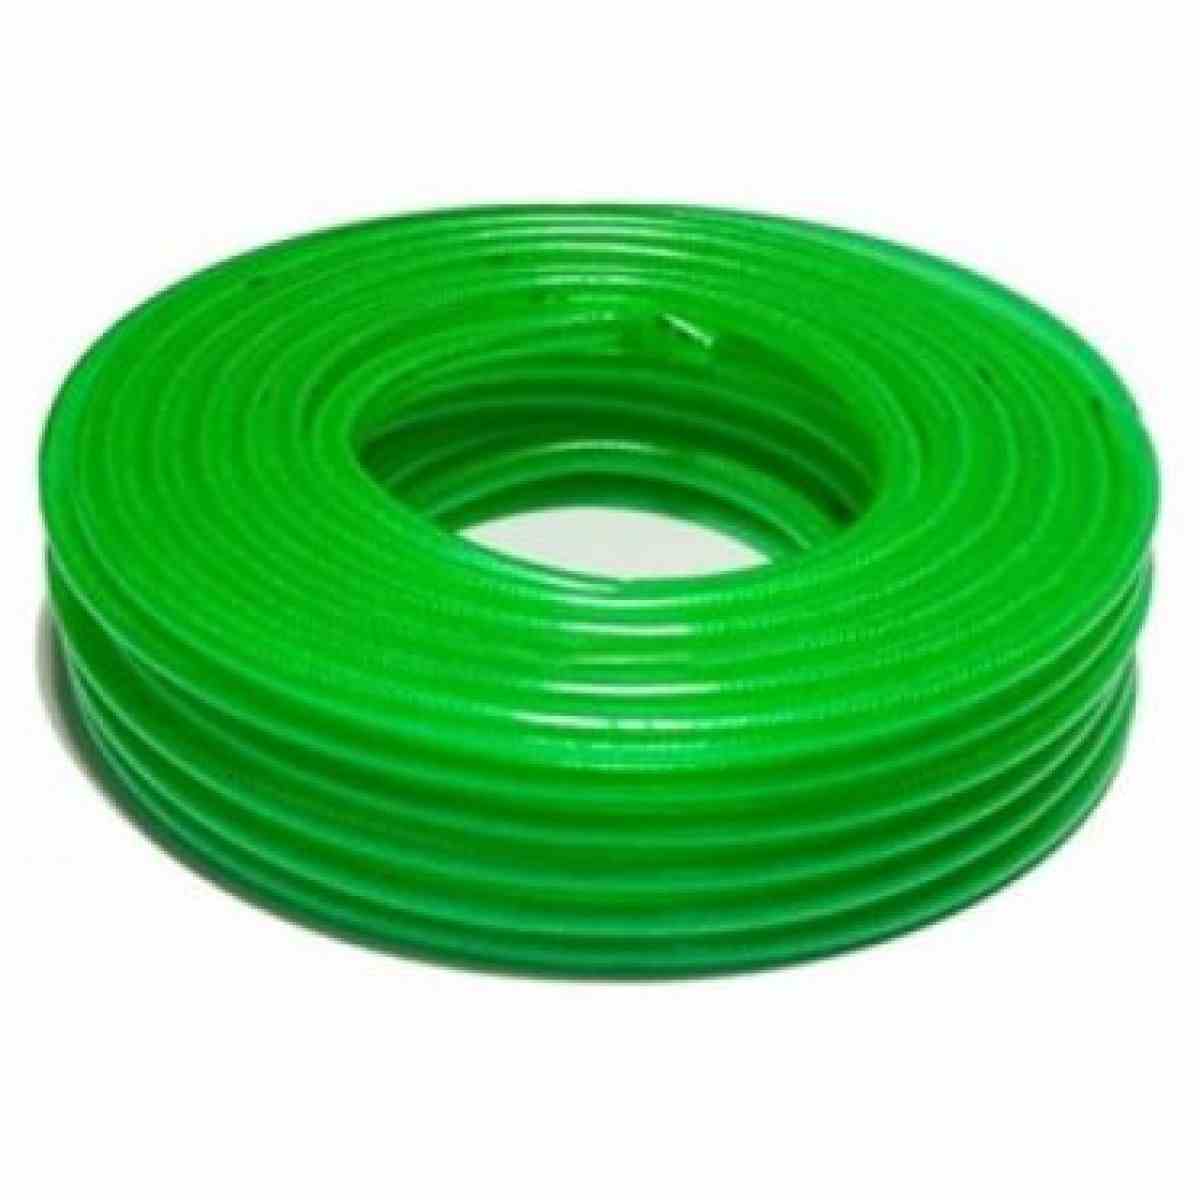 Ống lưới dẻo nhựa xanh lá 2 lớp lưới